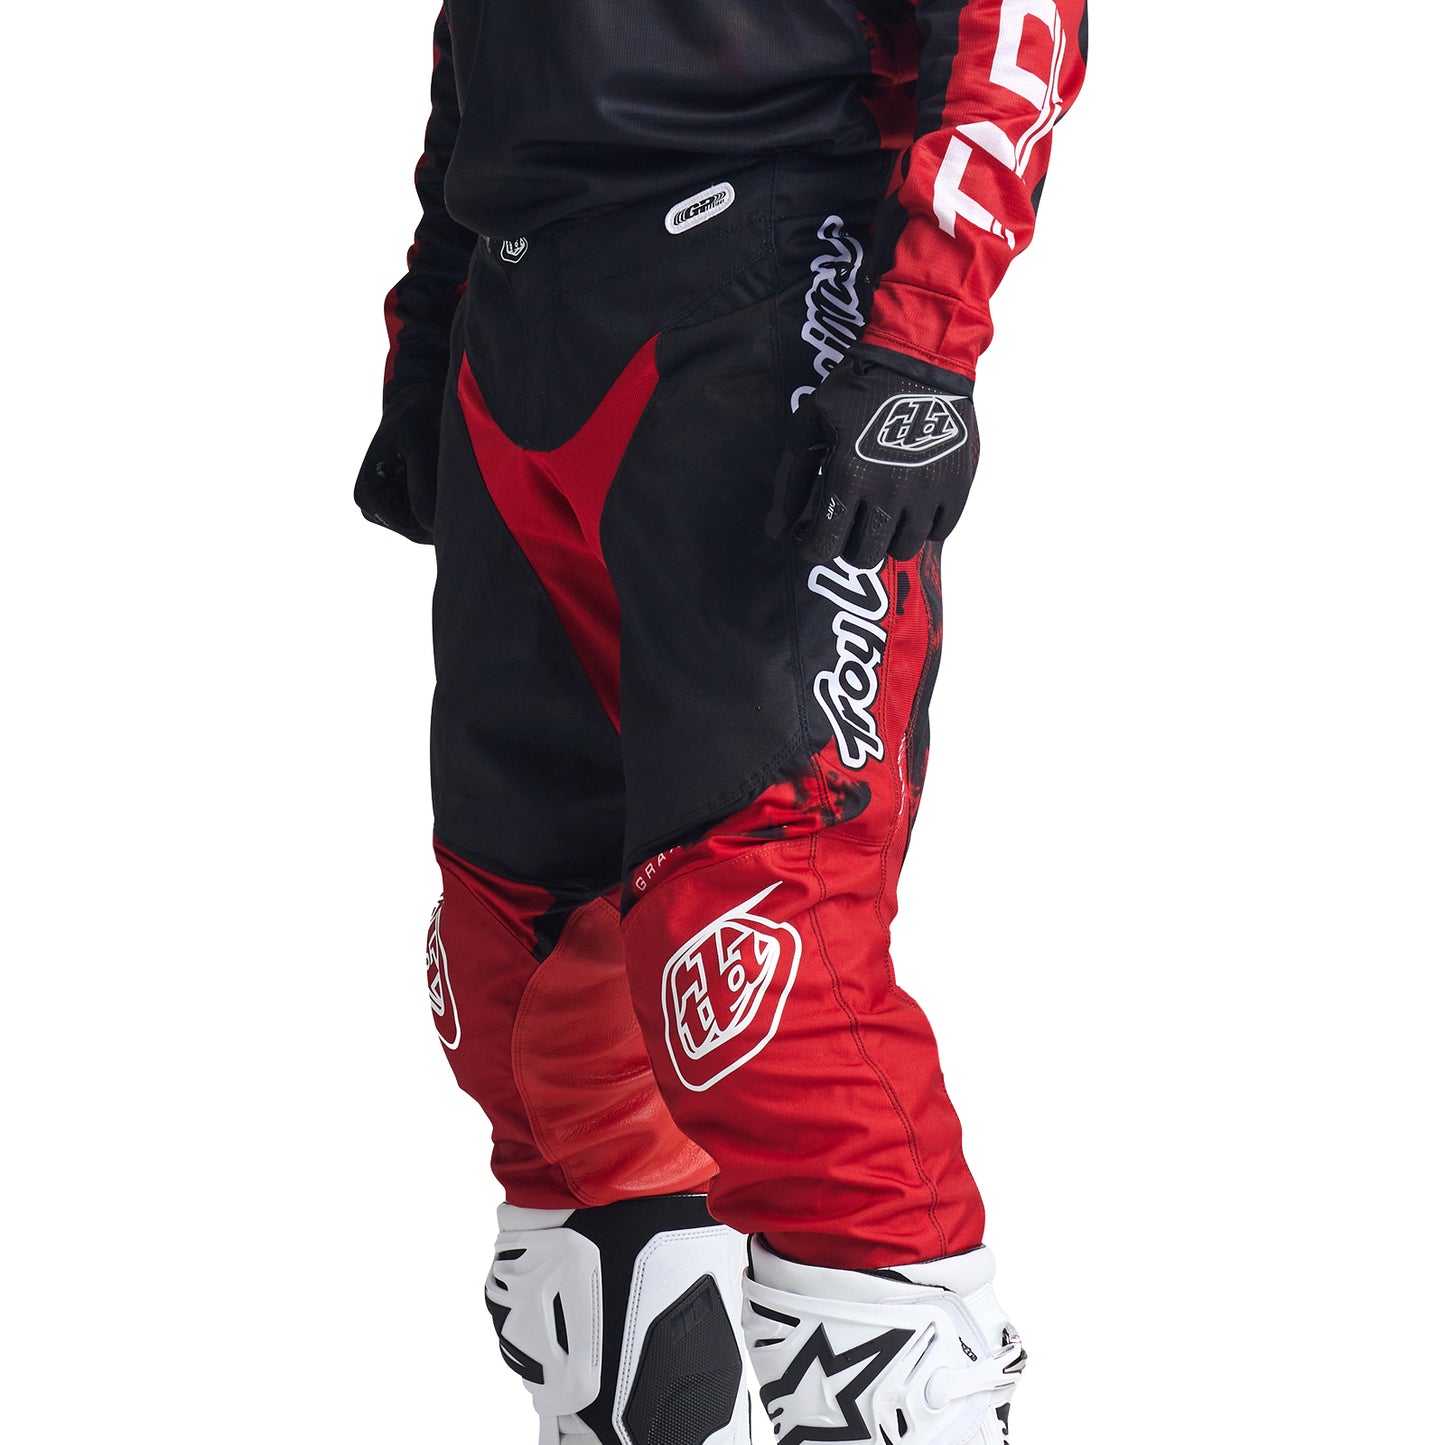 GP Pant Astro Red / Black – Troy Lee Designs